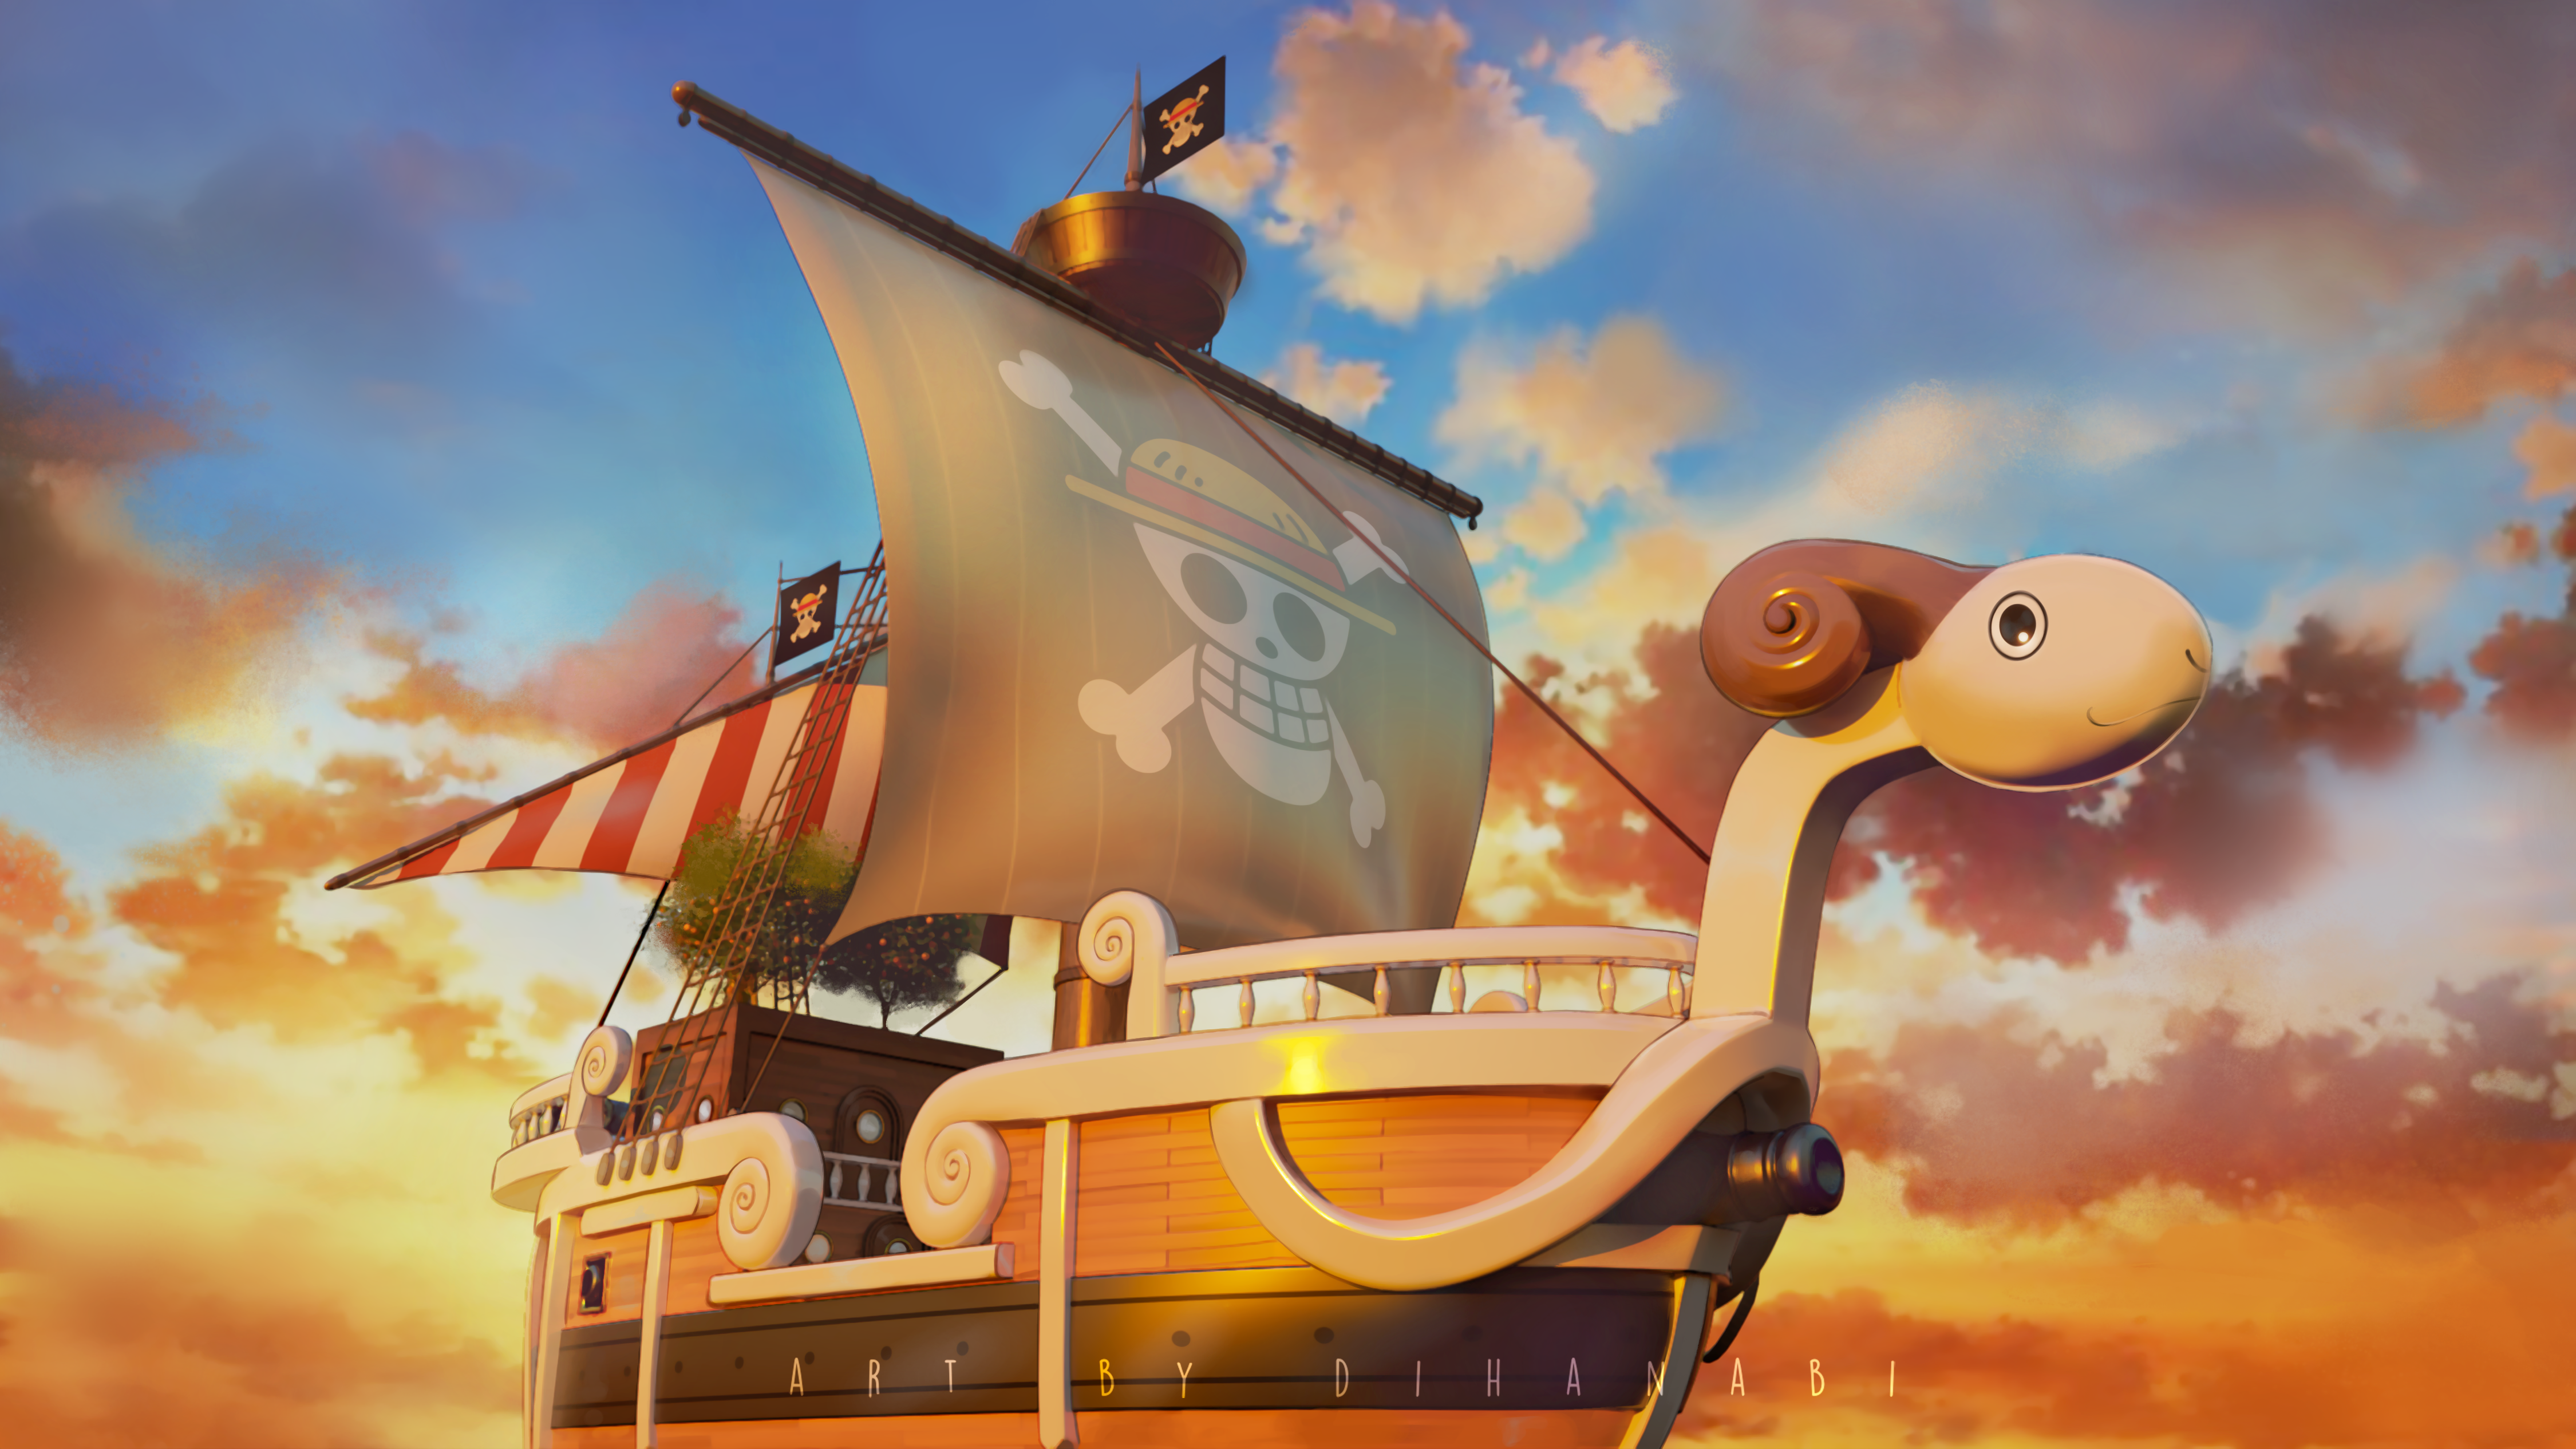 One Piece: Netflix revela visual do navio Going Merry